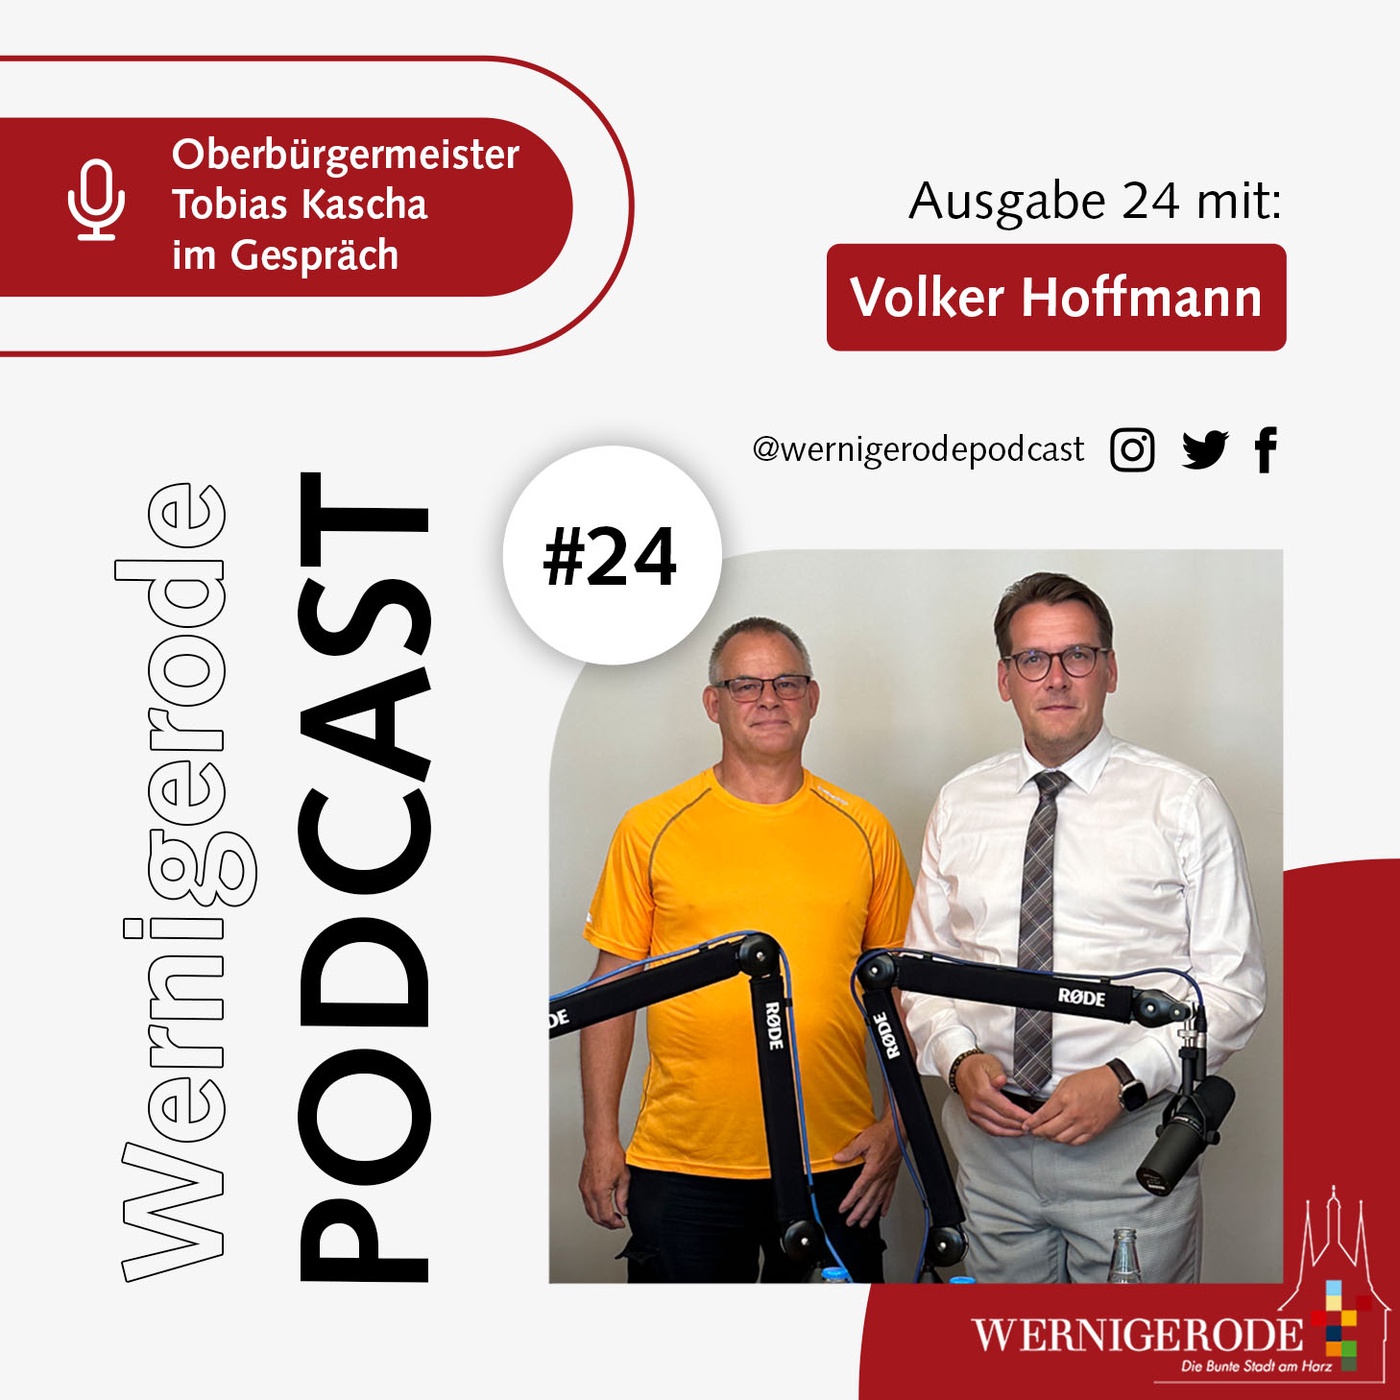 Wernigerode Podcast  #24- Oberbürgermeister Tobias Kascha im Gespräch mit Volker Hoffmann.